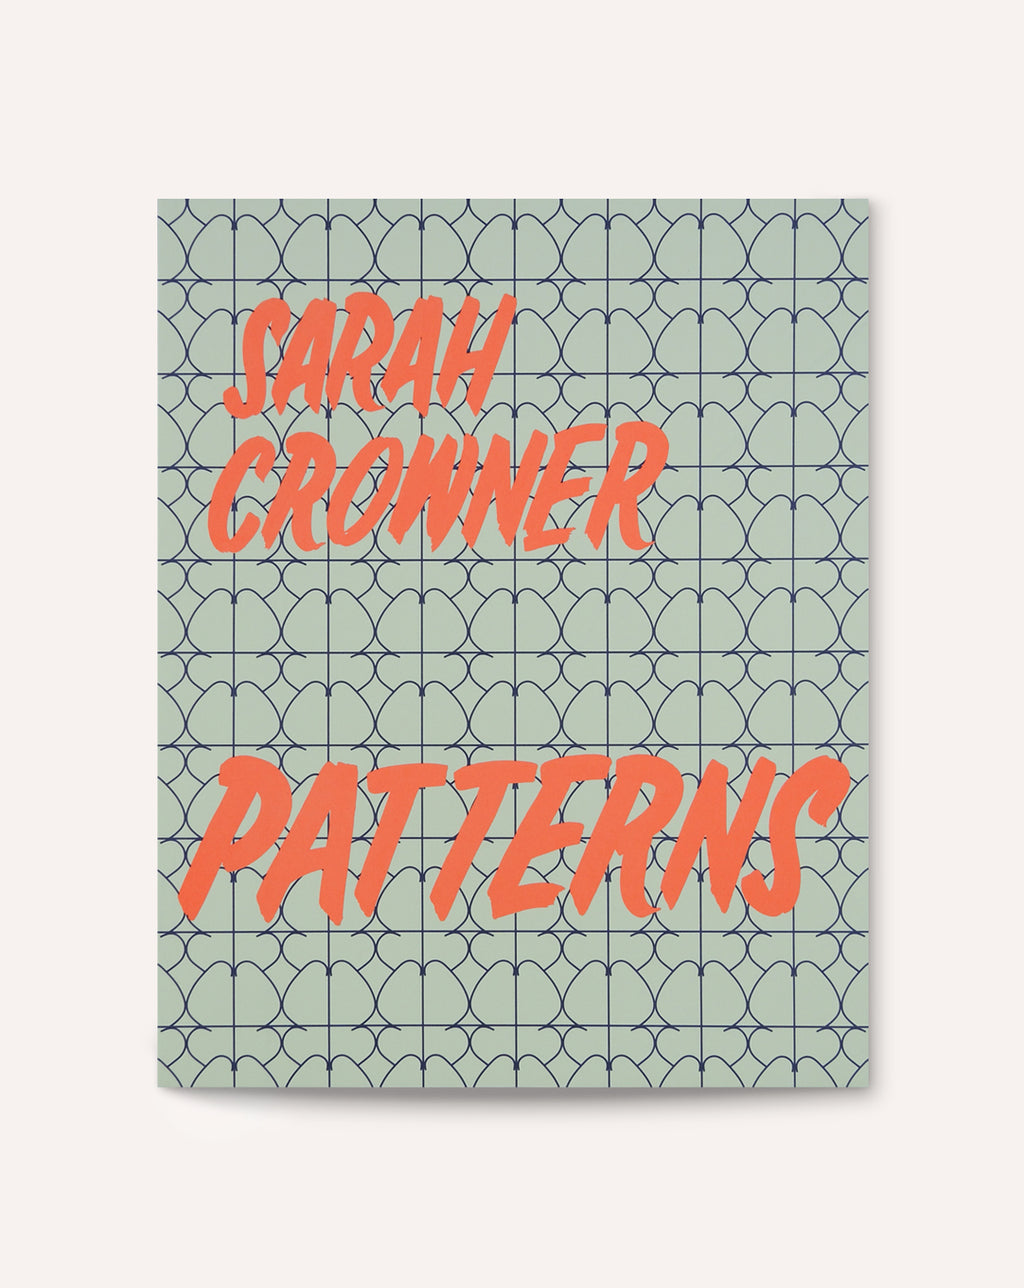 Patterns / Sarah Crowner